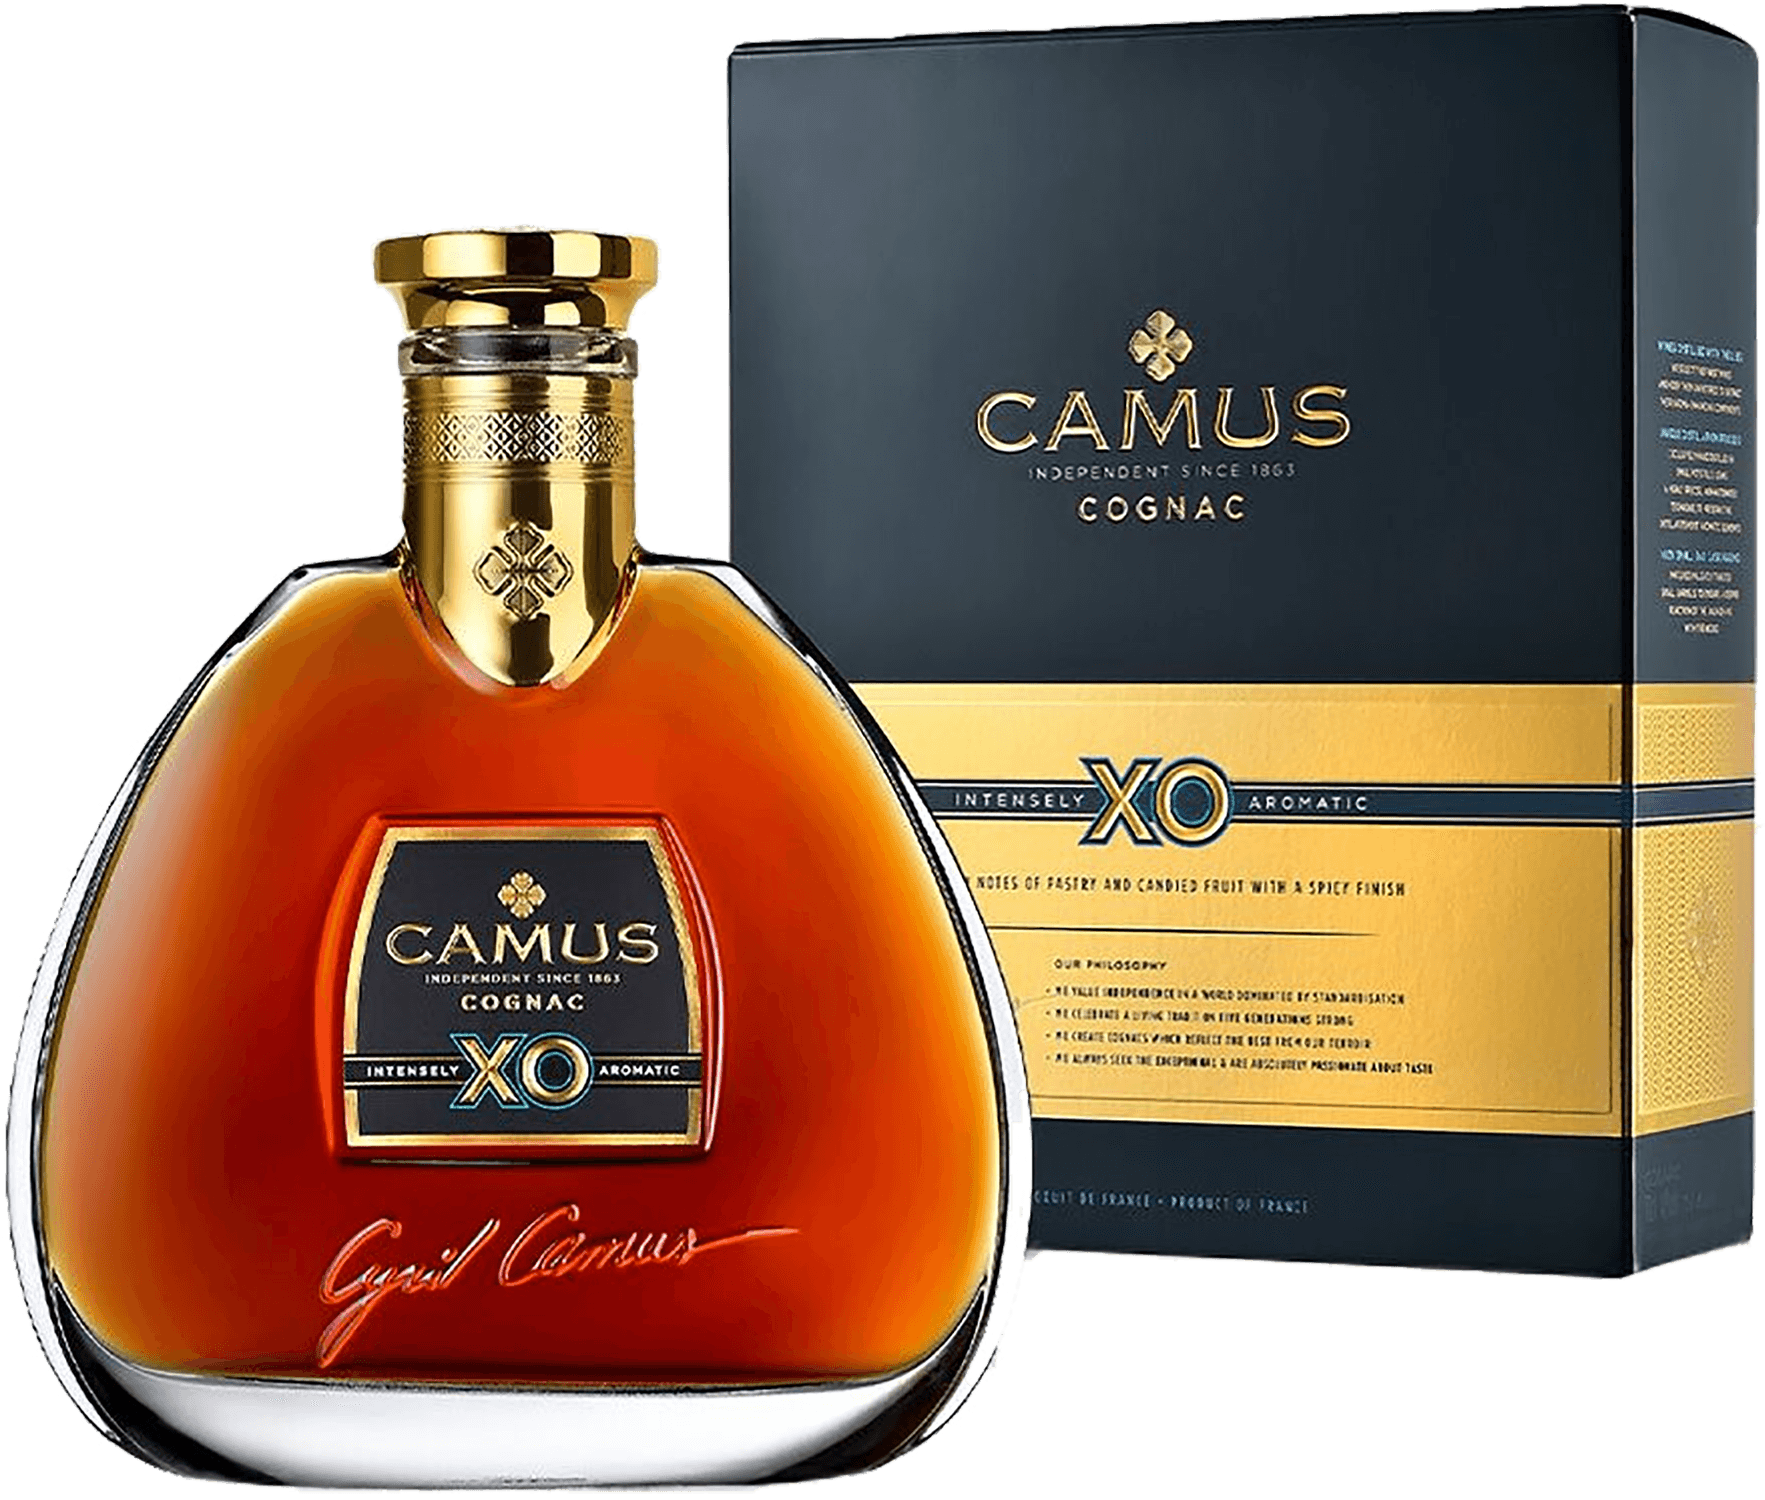 camus cognac borderie xo gift box Camus Cognac XO (gift box)